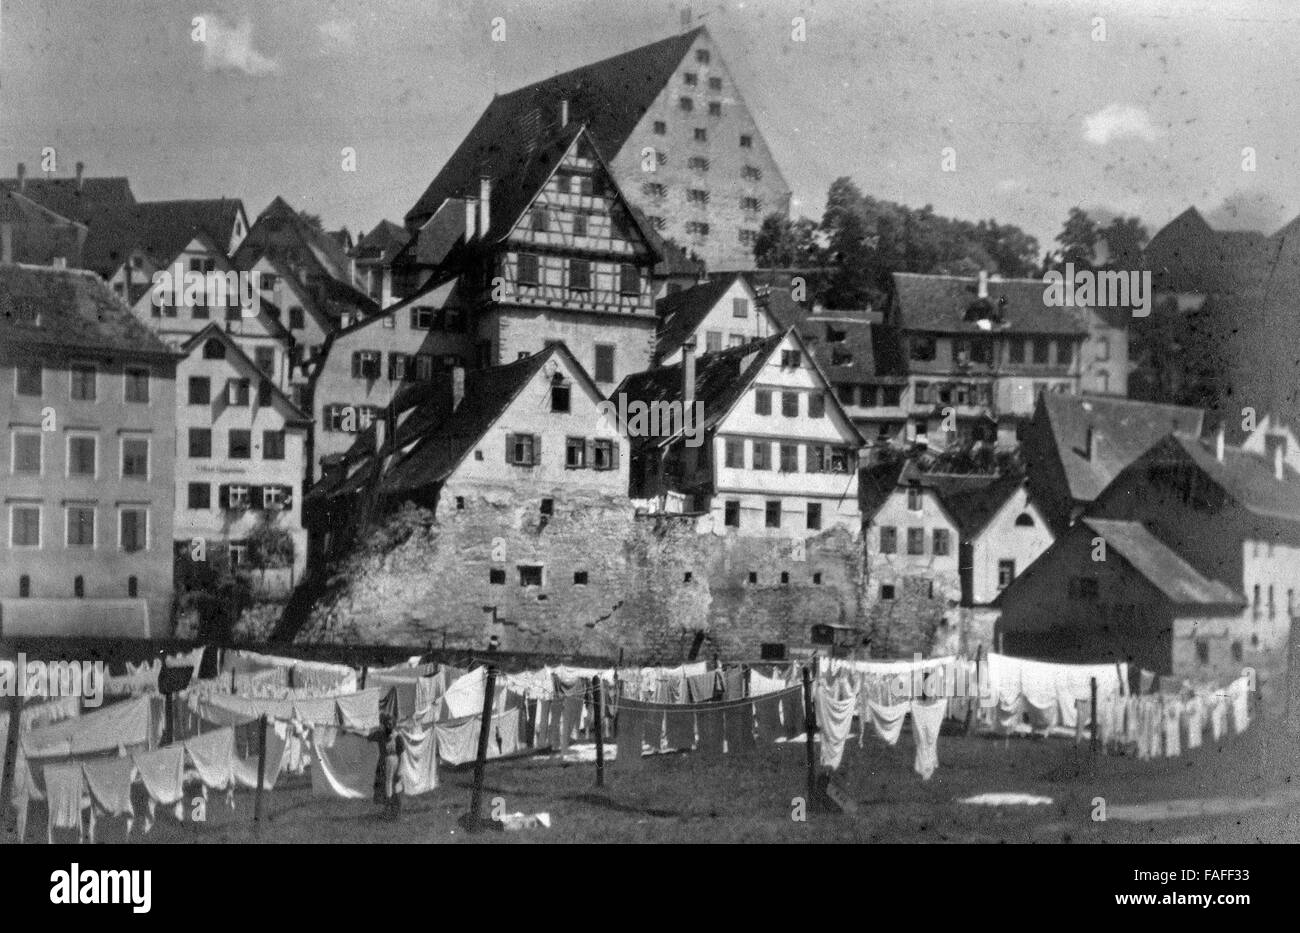 Ferienfahrt durch fränkische Städte in den 1920er Jahren, hier: Waschtag in Schwäbisch Hall Foto Stock